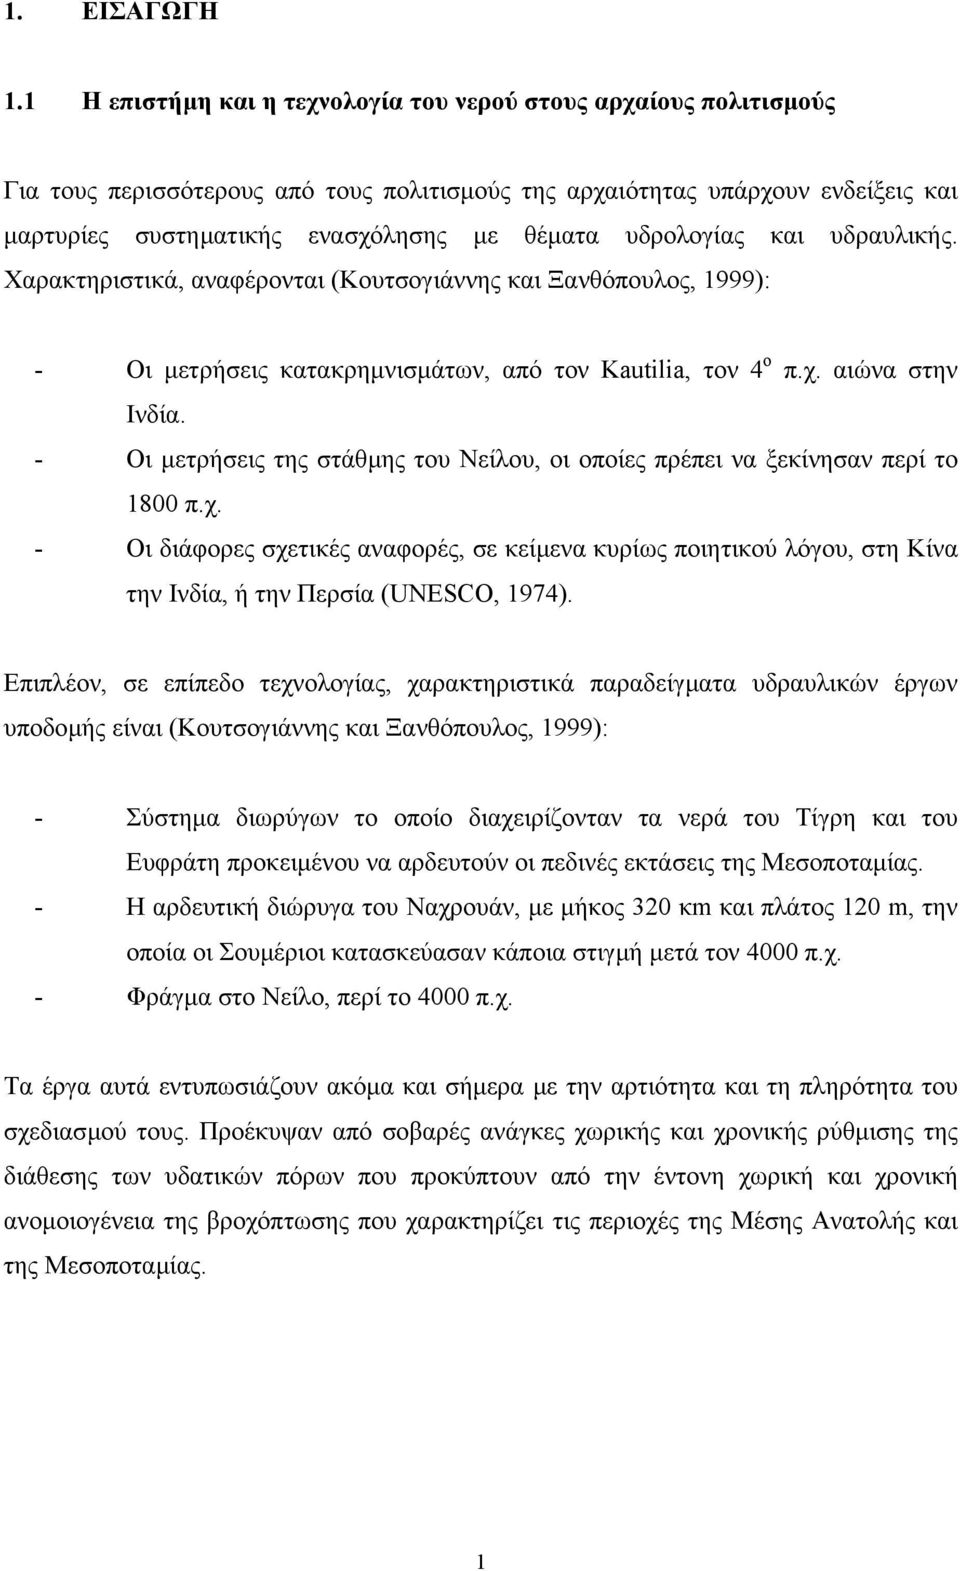 υδρολογίας και υδραυλικής. Χαρακτηριστικά, αναφέρονται (Κουτσογιάννης και Ξανθόπουλος, 1999): - Οι µετρήσεις κατακρηµνισµάτων, από τον Kautilia, τον 4 ο π.χ. αιώνα στην Ινδία.